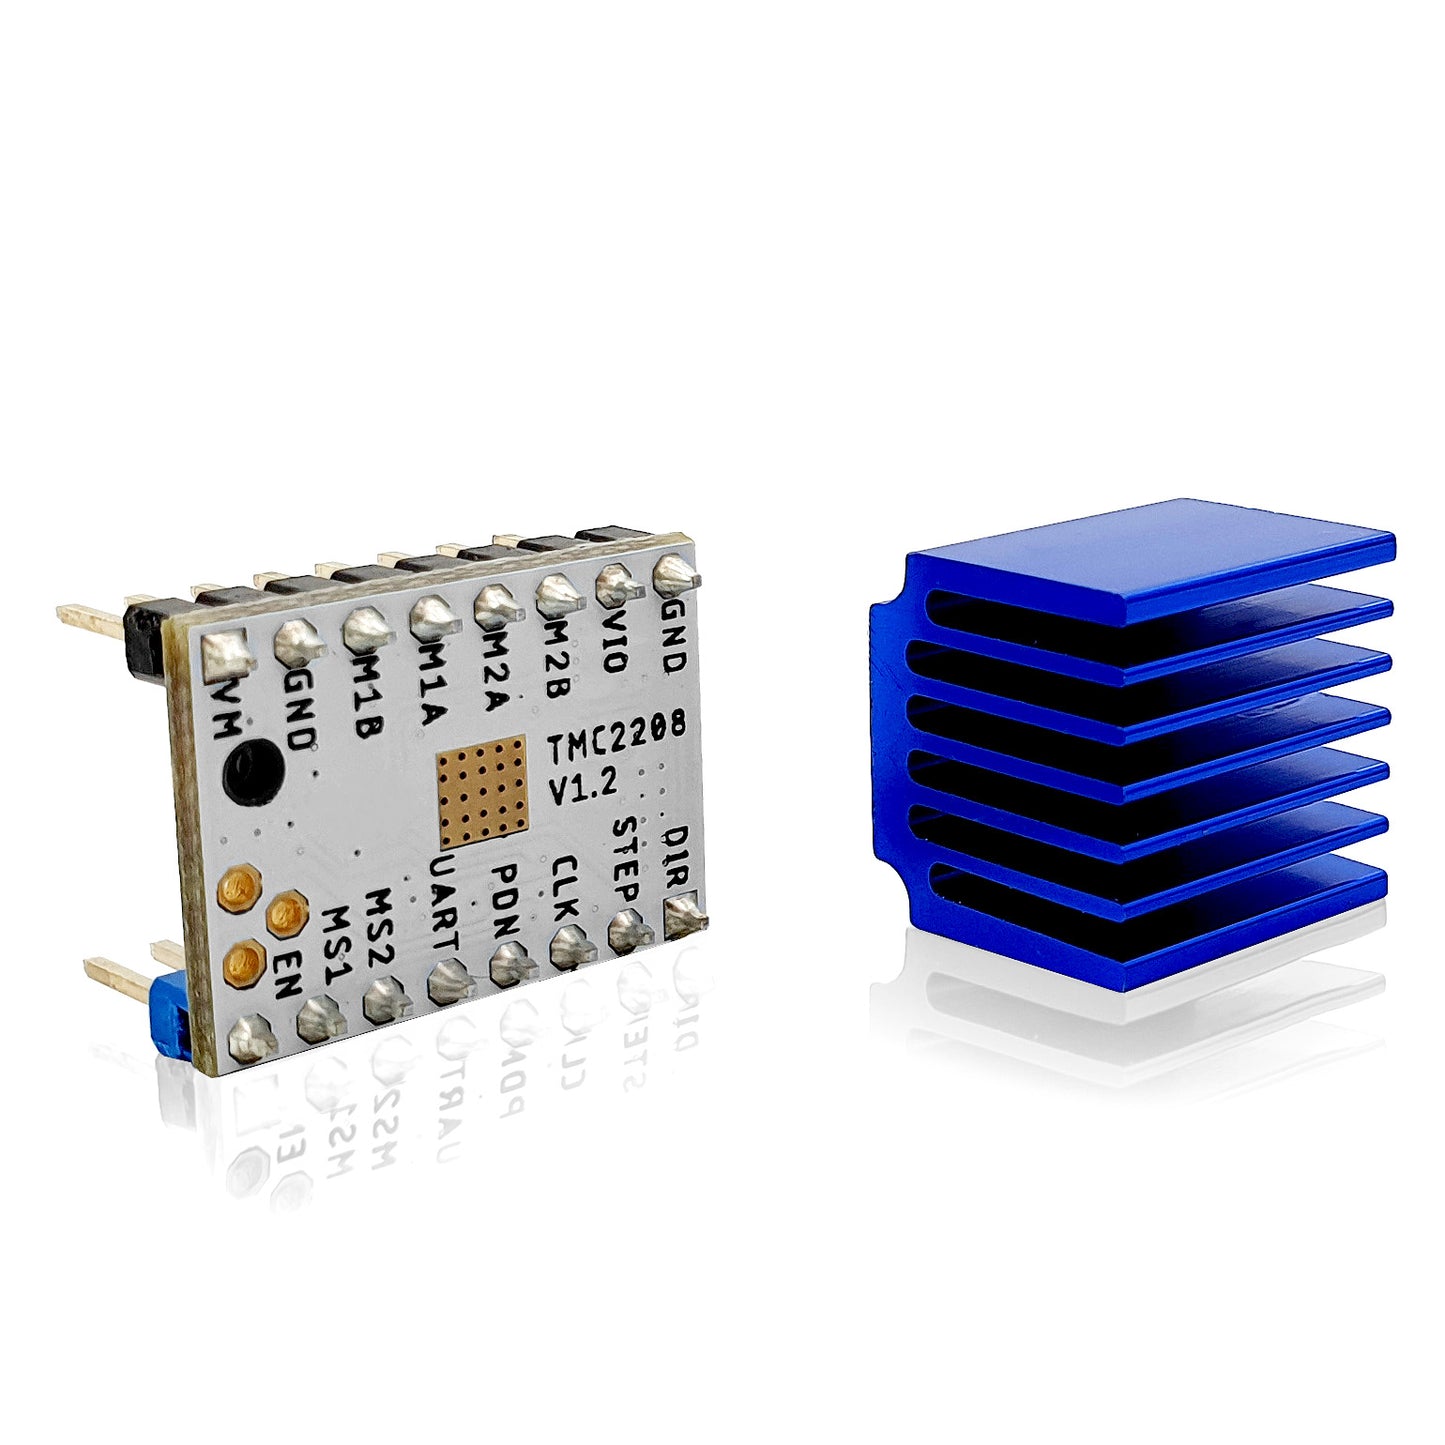 TMC2208 V1.2 UART Ultra Silent Schrittmotortreiber Modul + Kühlkörper für 3D Drucker - dinngs